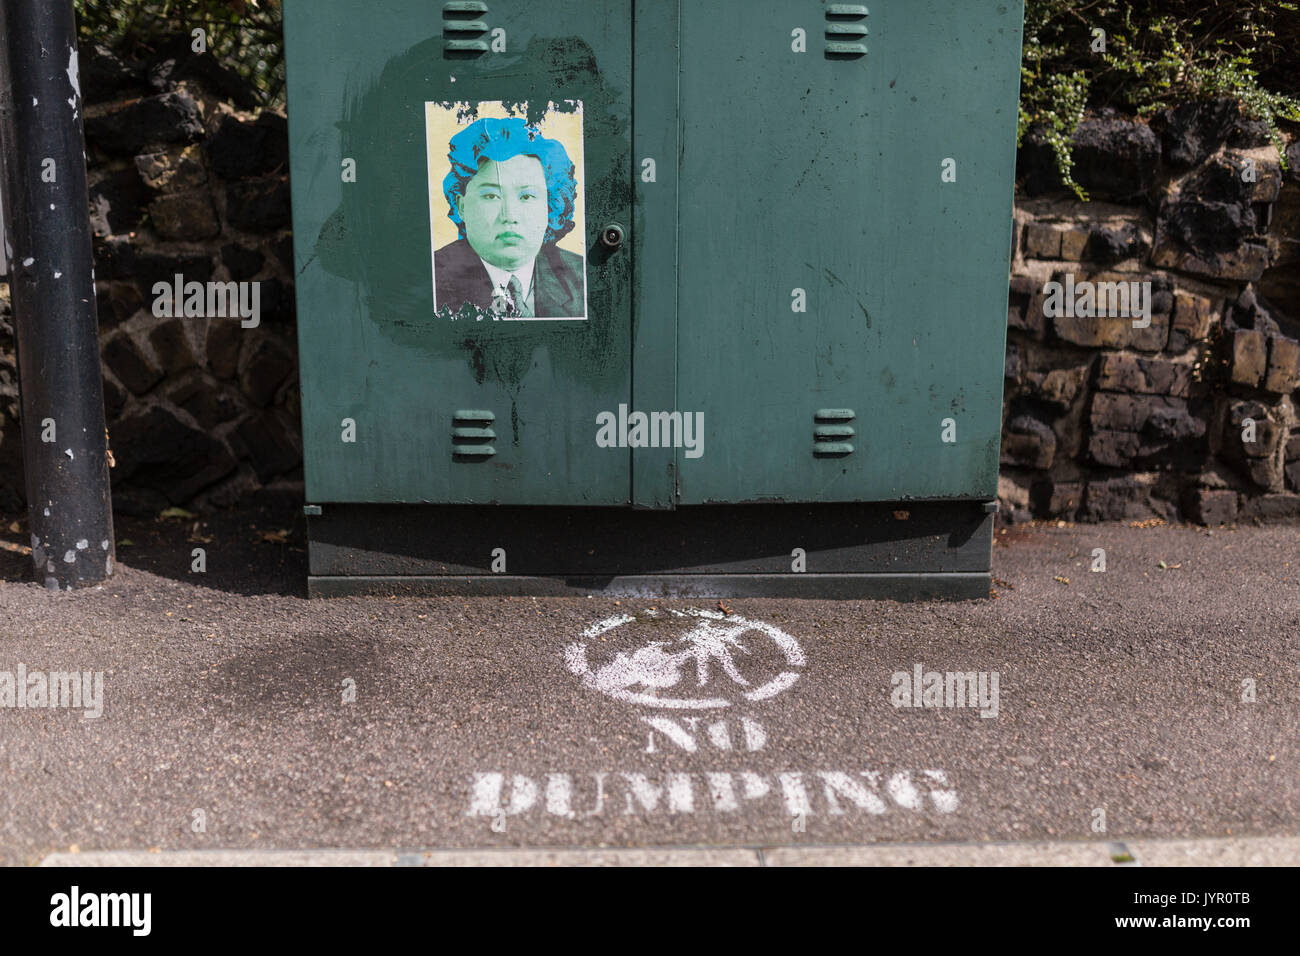 Le dirigeant nord-coréen Kim Jong Un comme Andy Warhol's Marilyn Monroe sur l'affiche, avec aucun signe de dumping sur la chaussée à l'avant. Banque D'Images